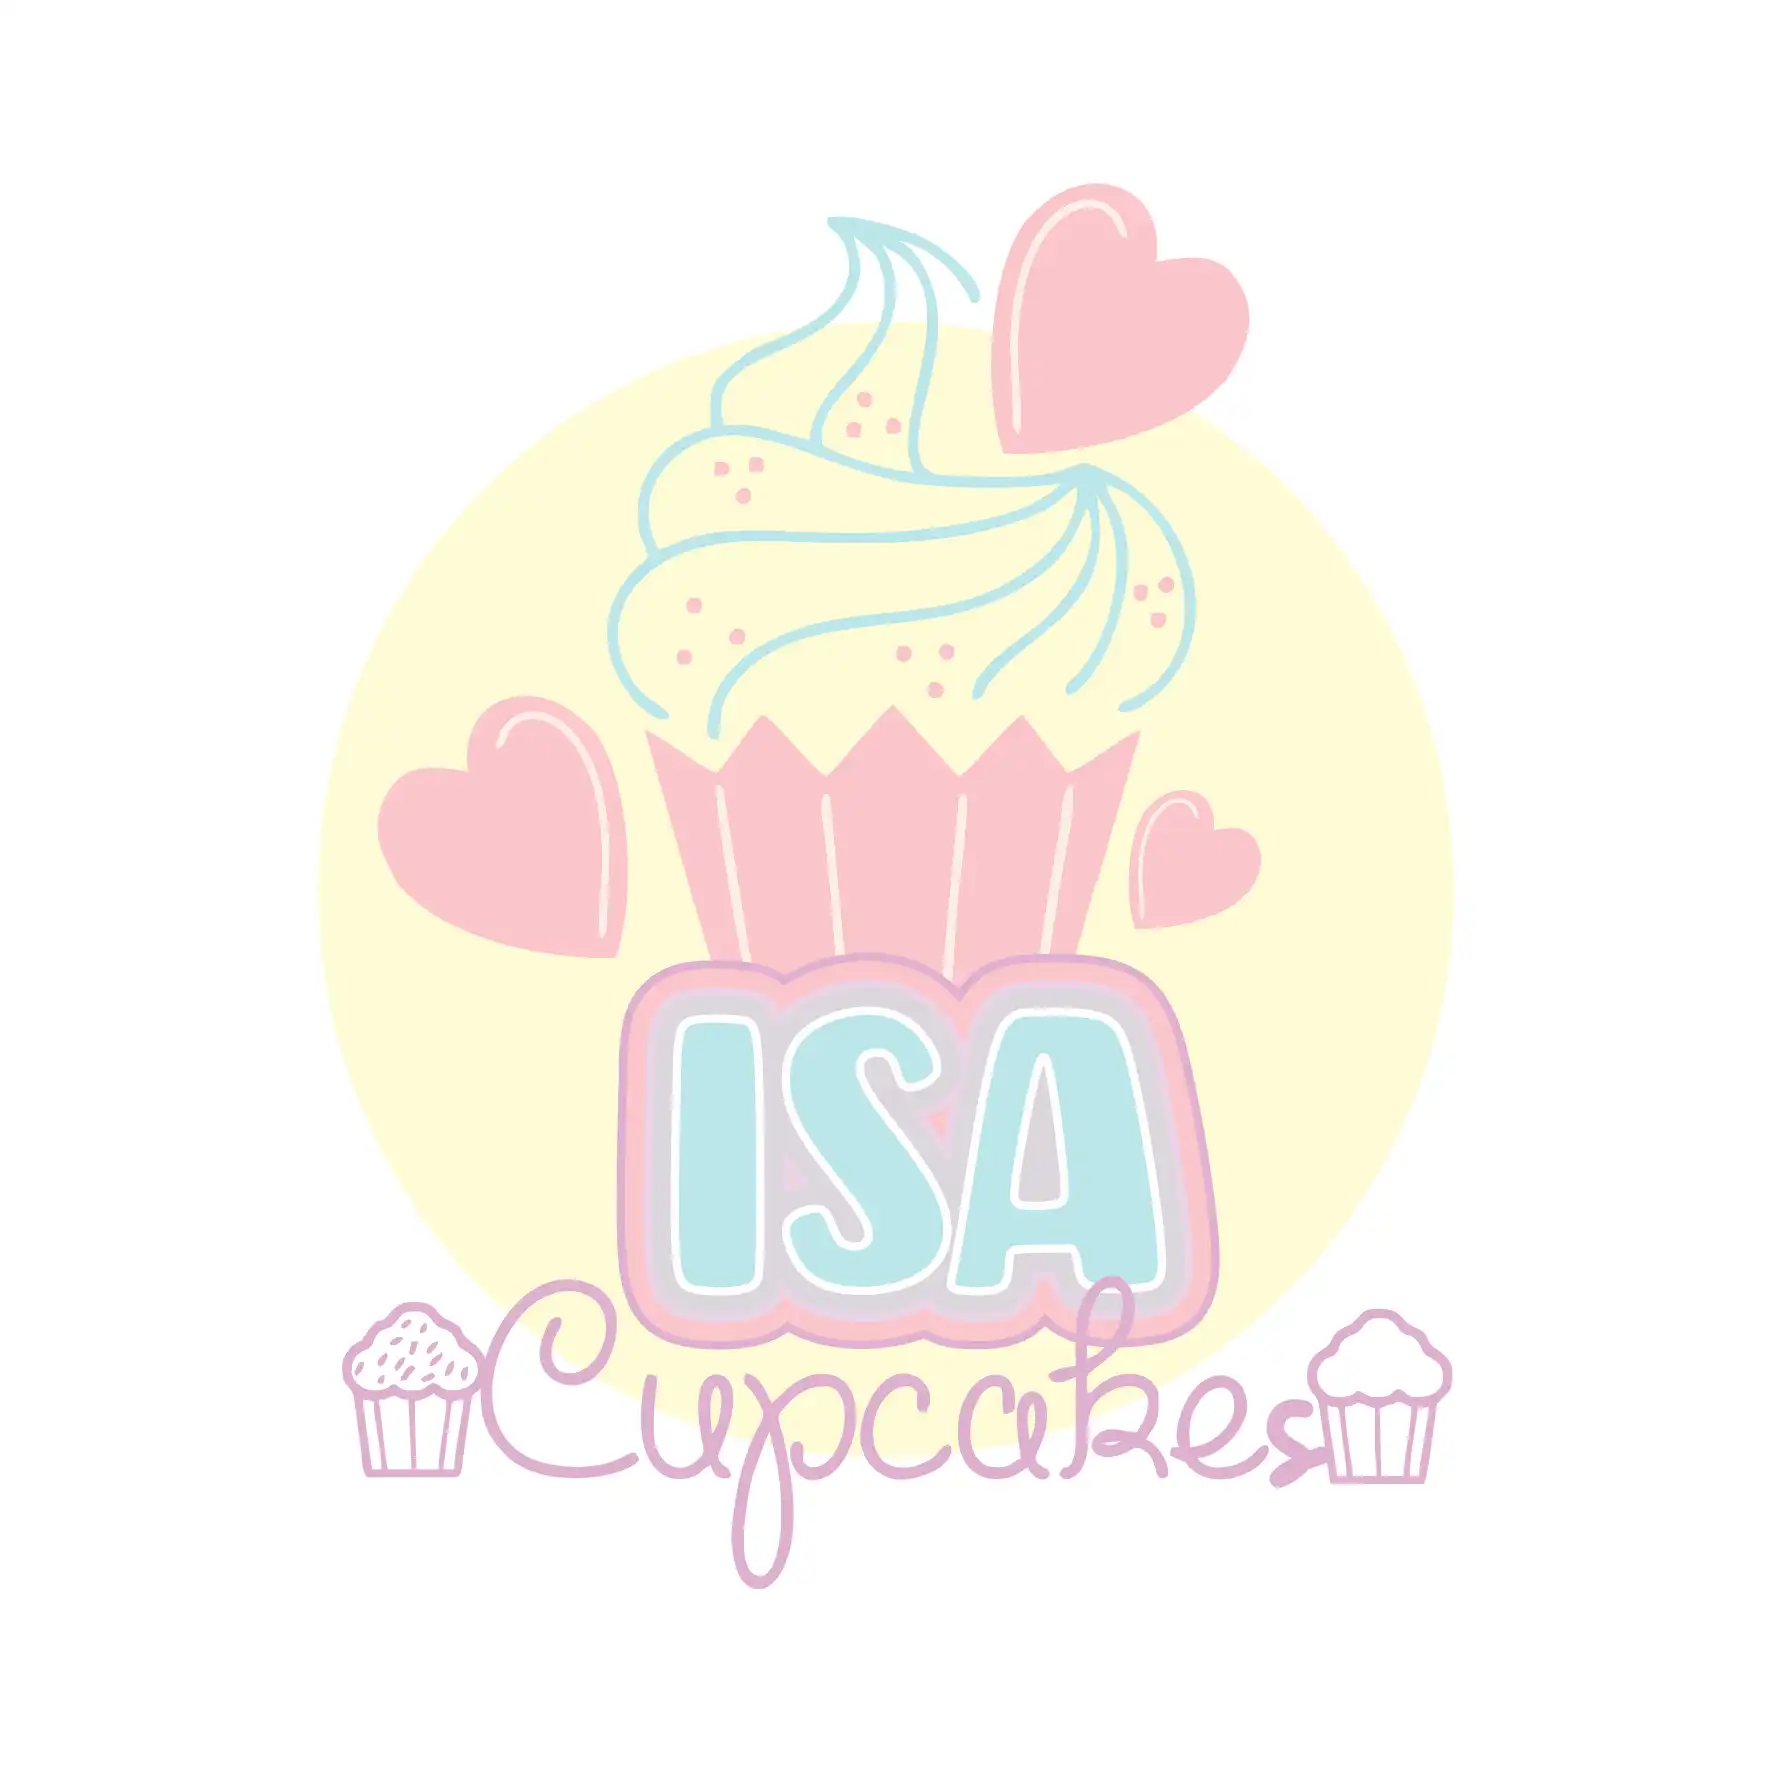 Logotipo Logomarca Cupcakes CakePops e Marshmallow
